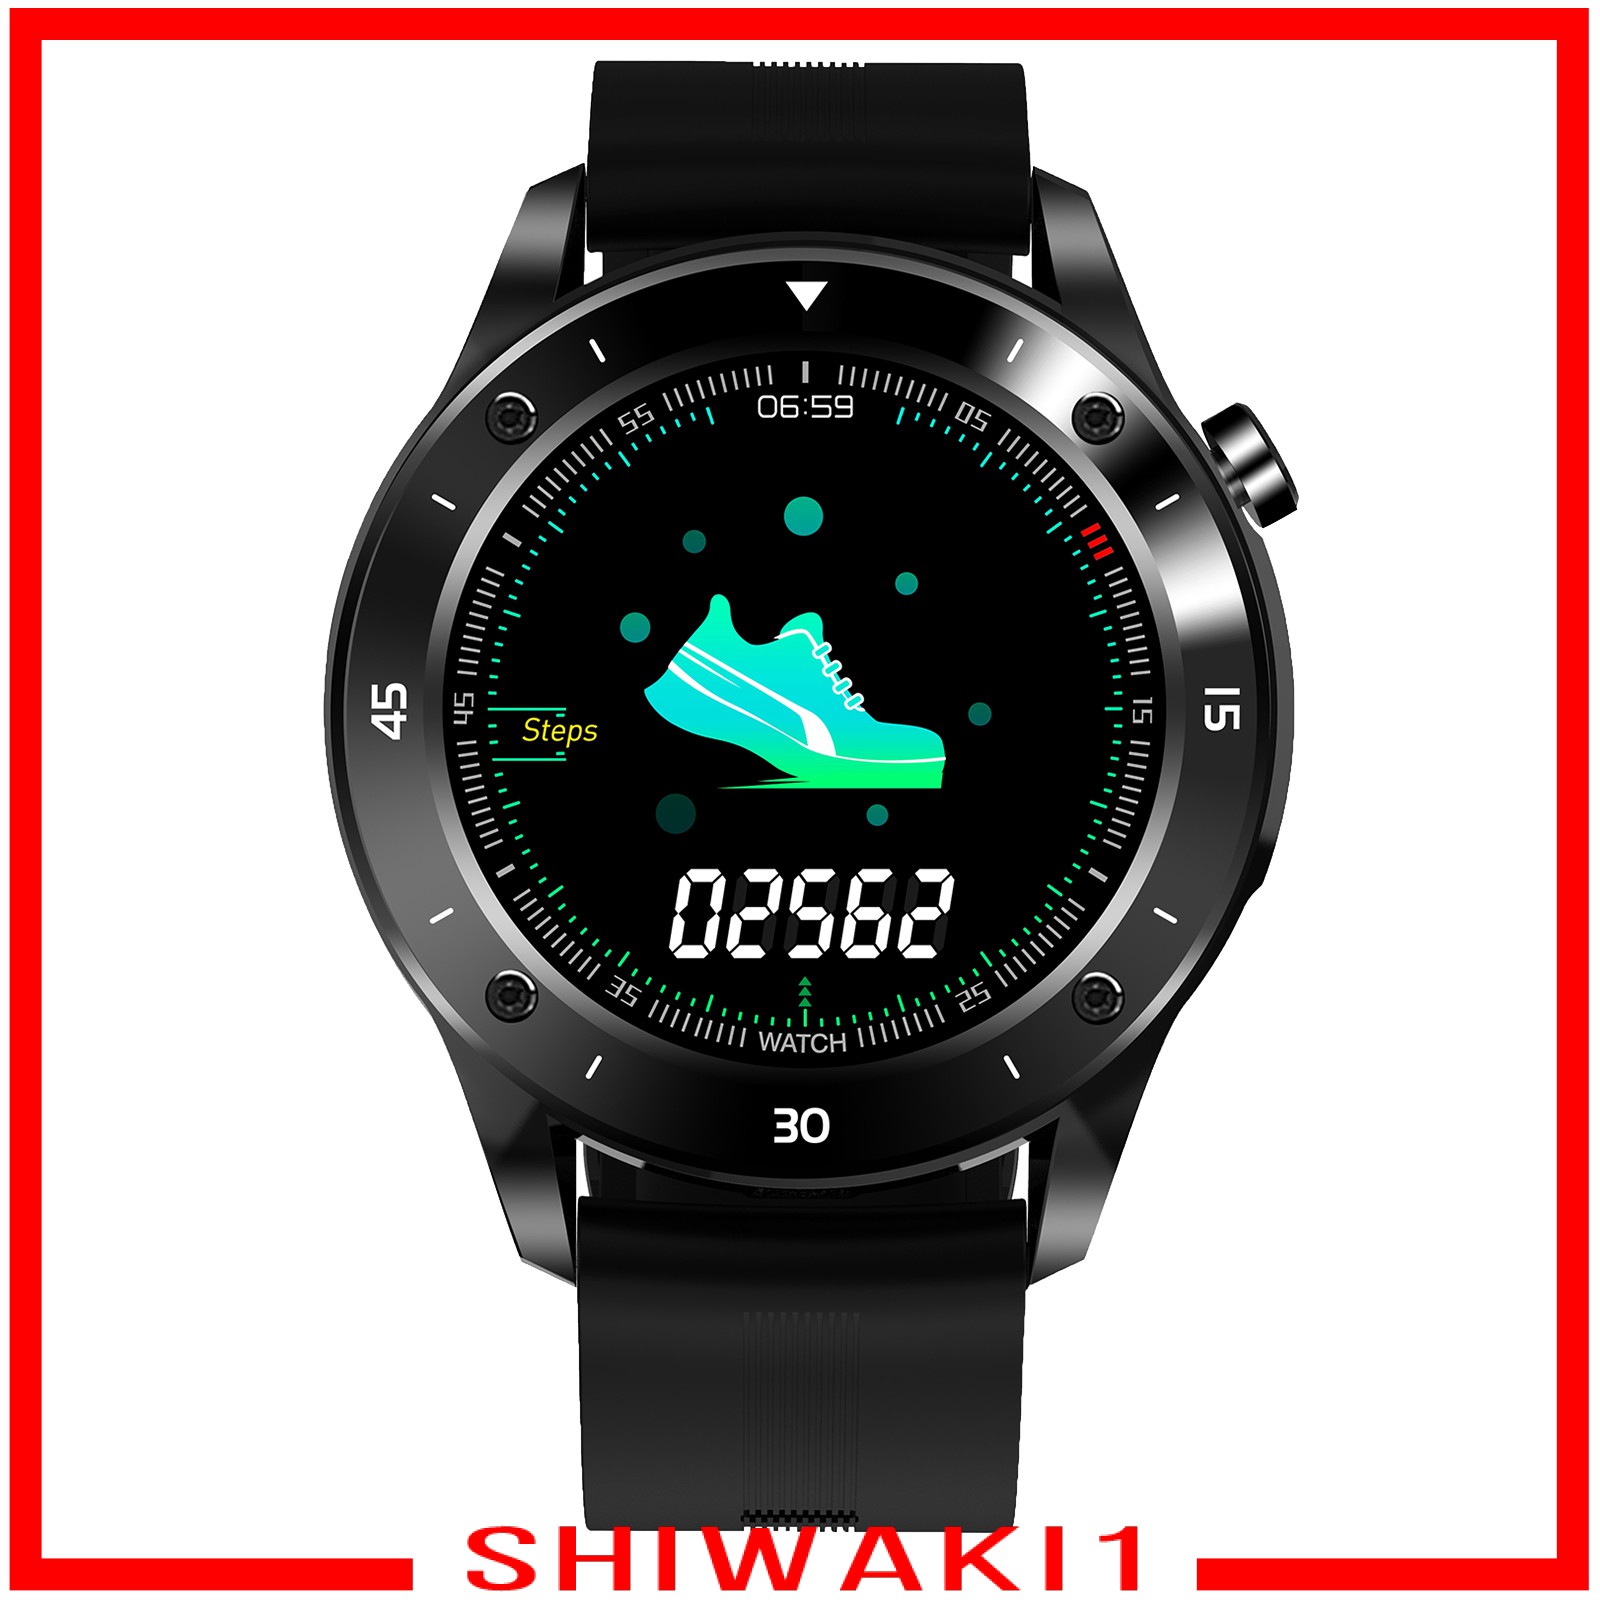 Bộ Đồng Hồ Thông Minh Shiwaki1 Bluetooth 1.54inch Ipx7 170mah Cao Cấp